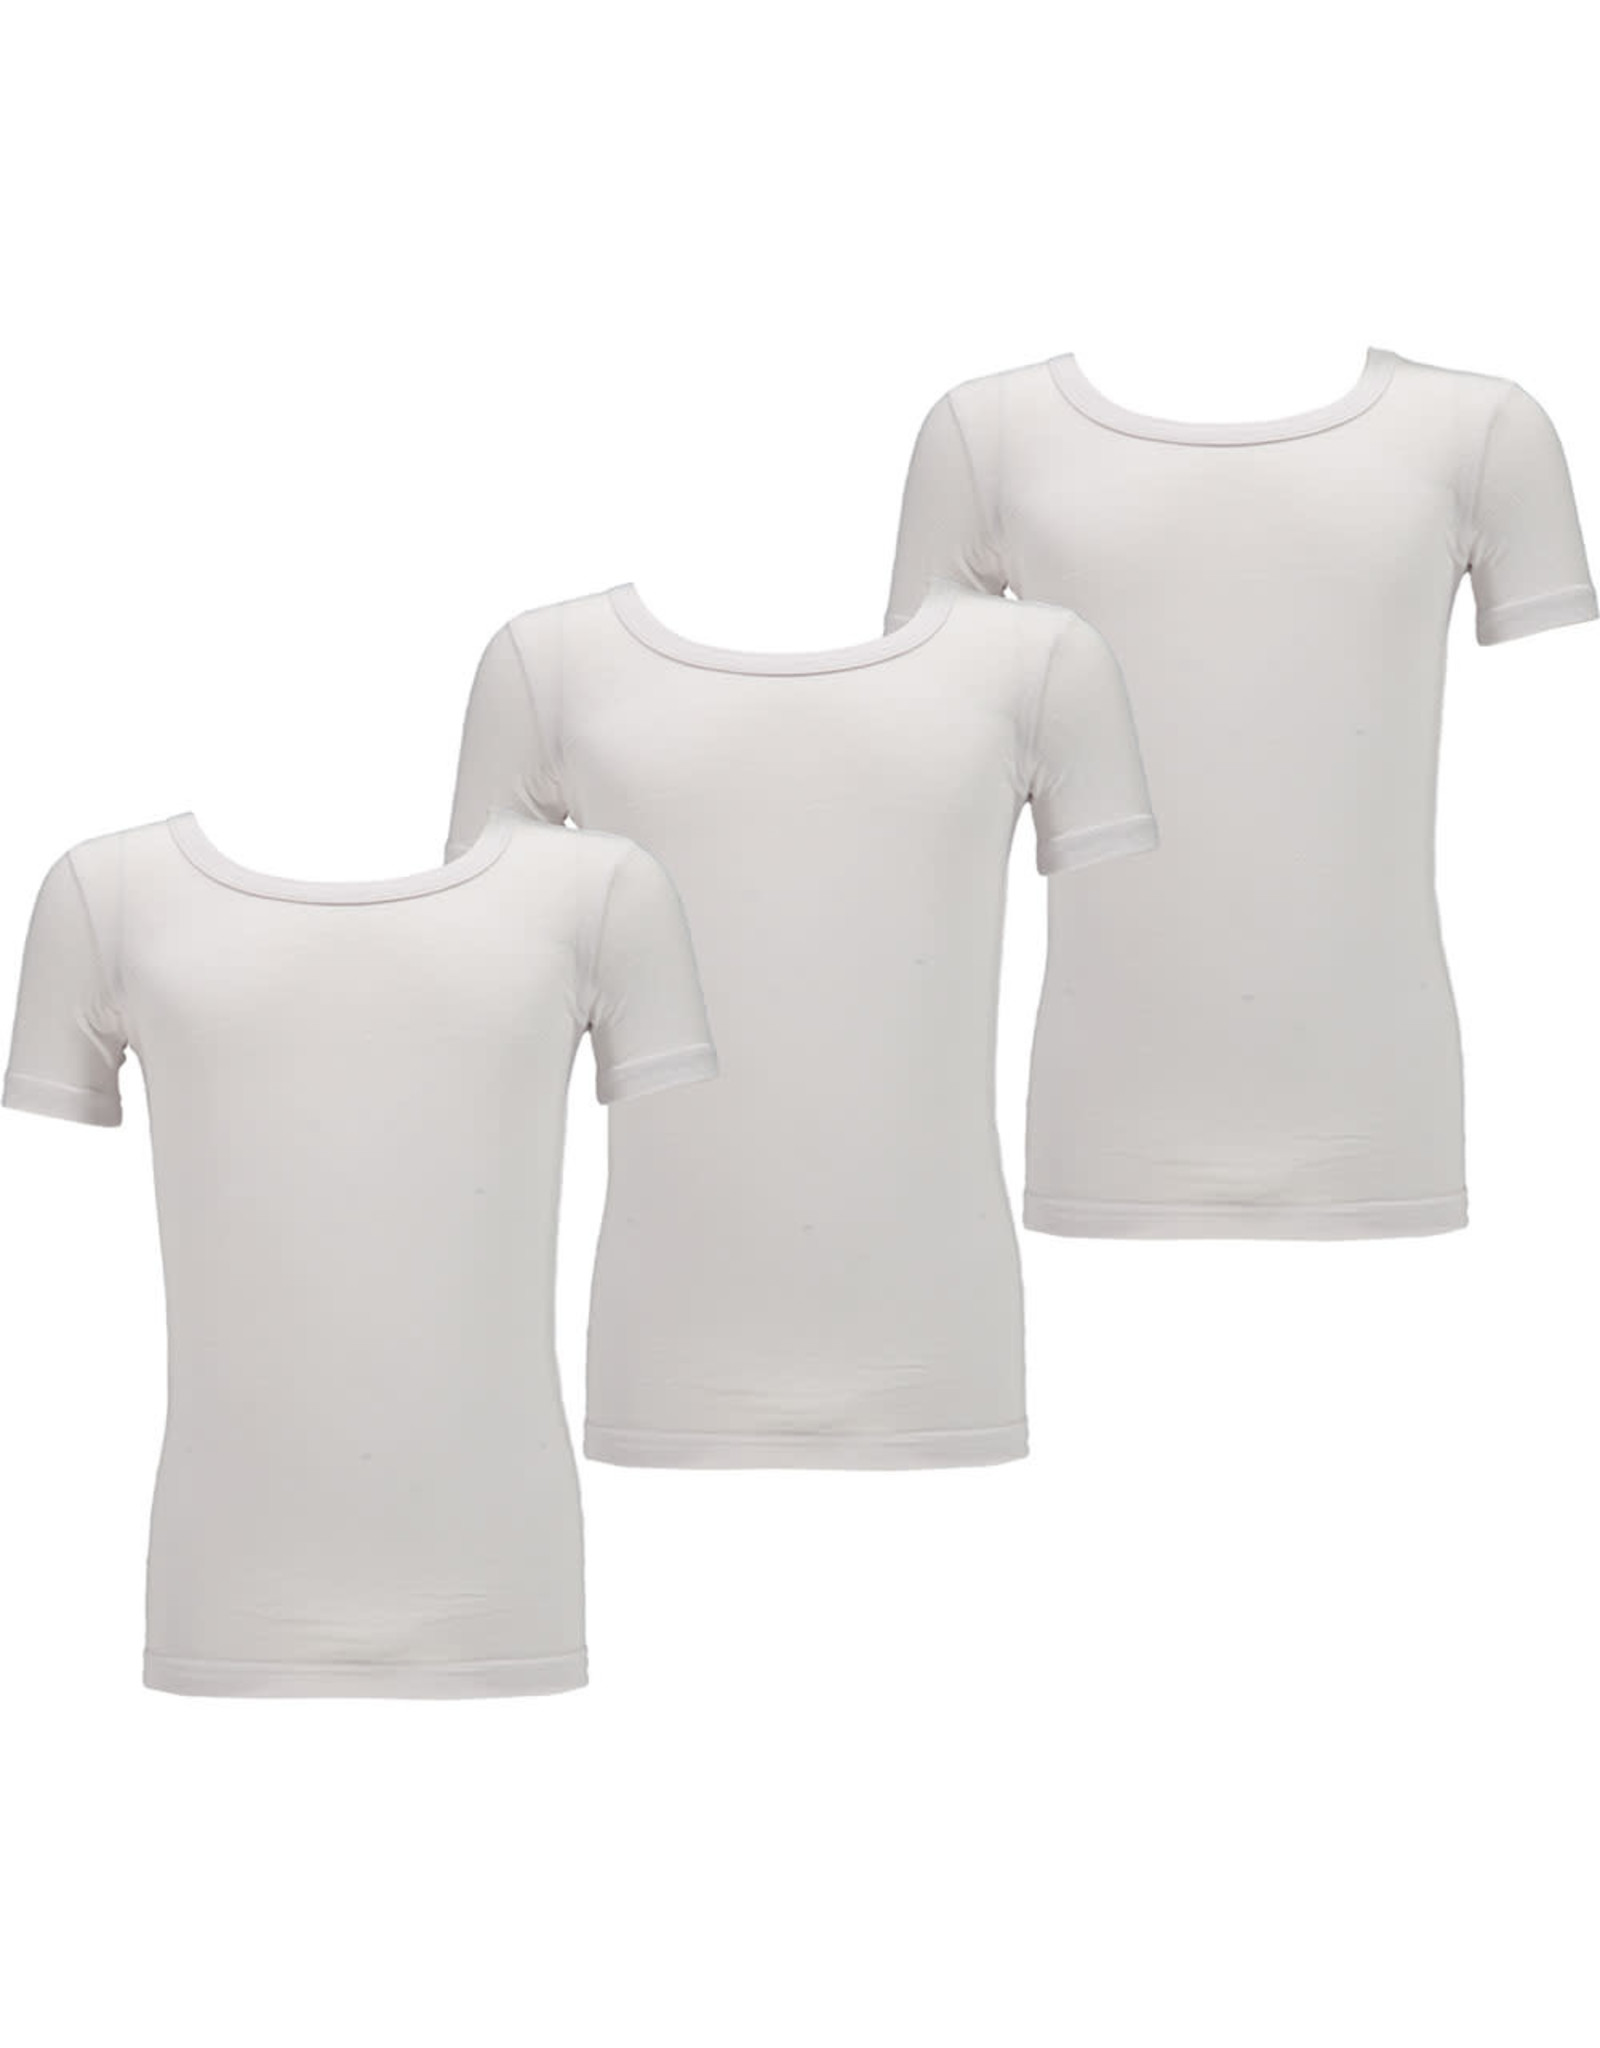 Apollo Basic Bamboe T-Shirt met Ronde Hals voor Kinderen, Wit (3 Stuks)